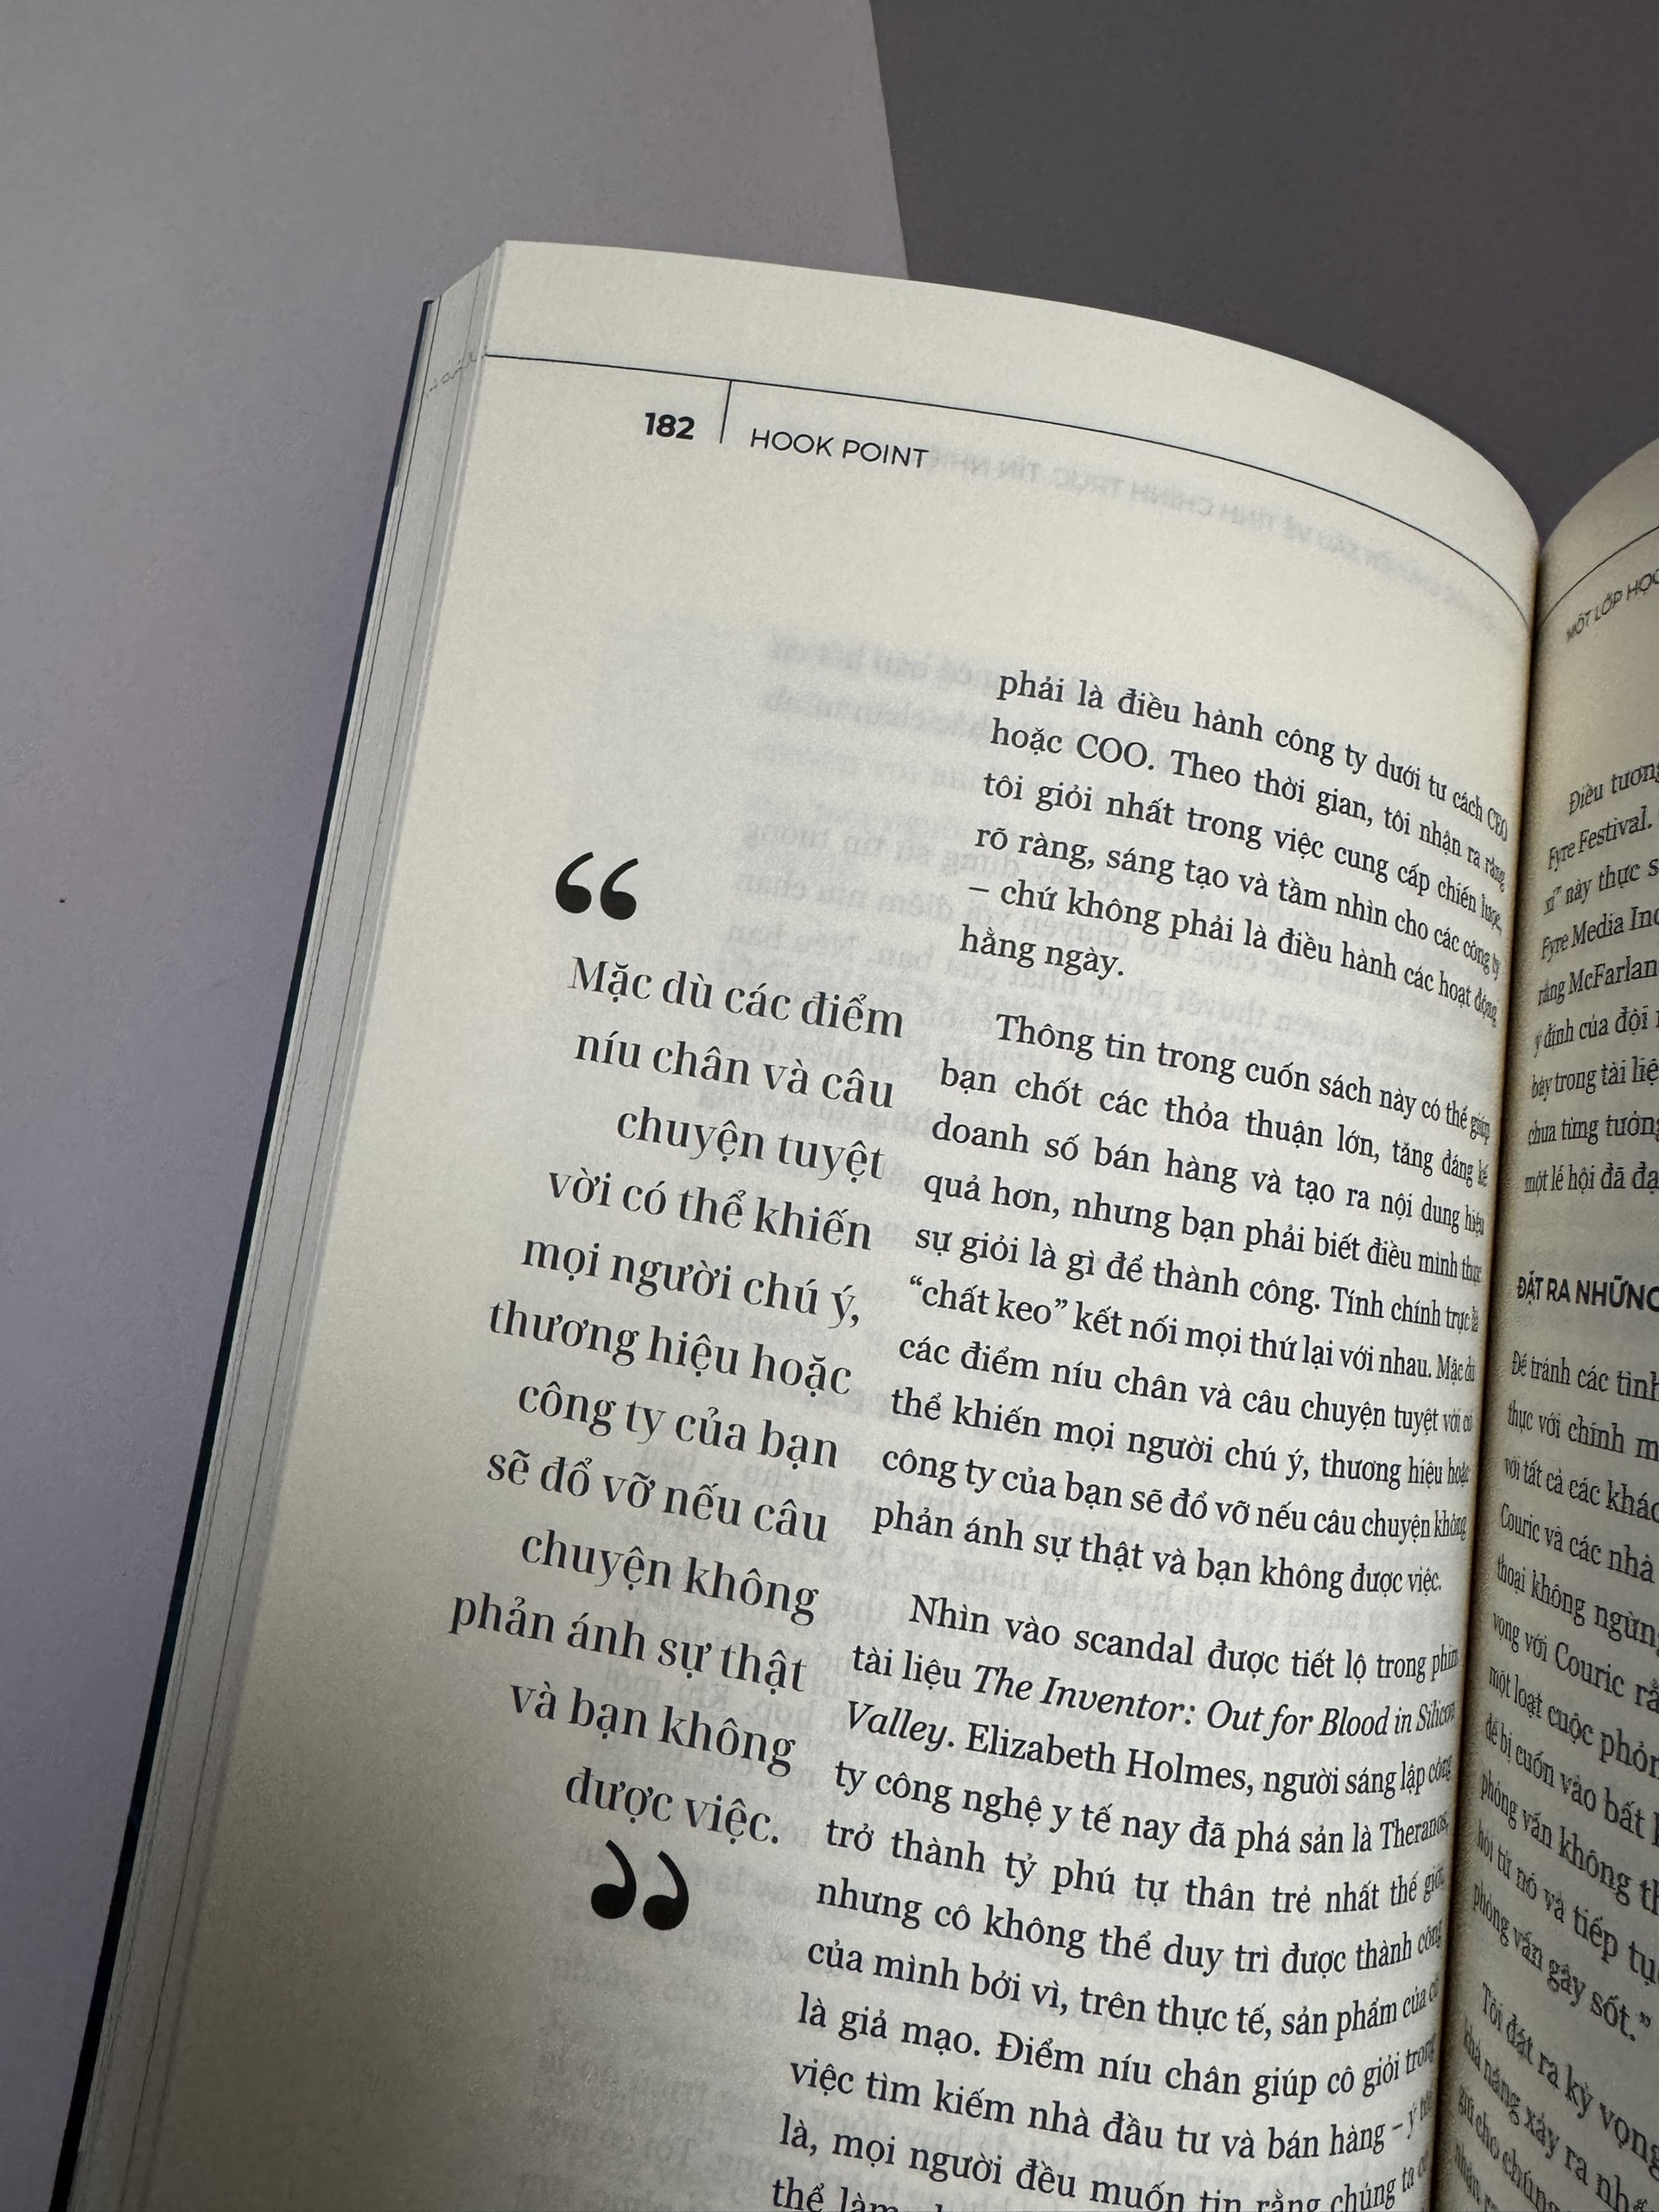 HOOK POINT - ĐIỂM NÍU CHÂN KHÁCH HÀNG TRONG THẾ GIỚI 3 GIÂY HỐI HẢ - Brendan Kane - Trung Trịnh dịch - Alpha Books - NXB Công Thương.